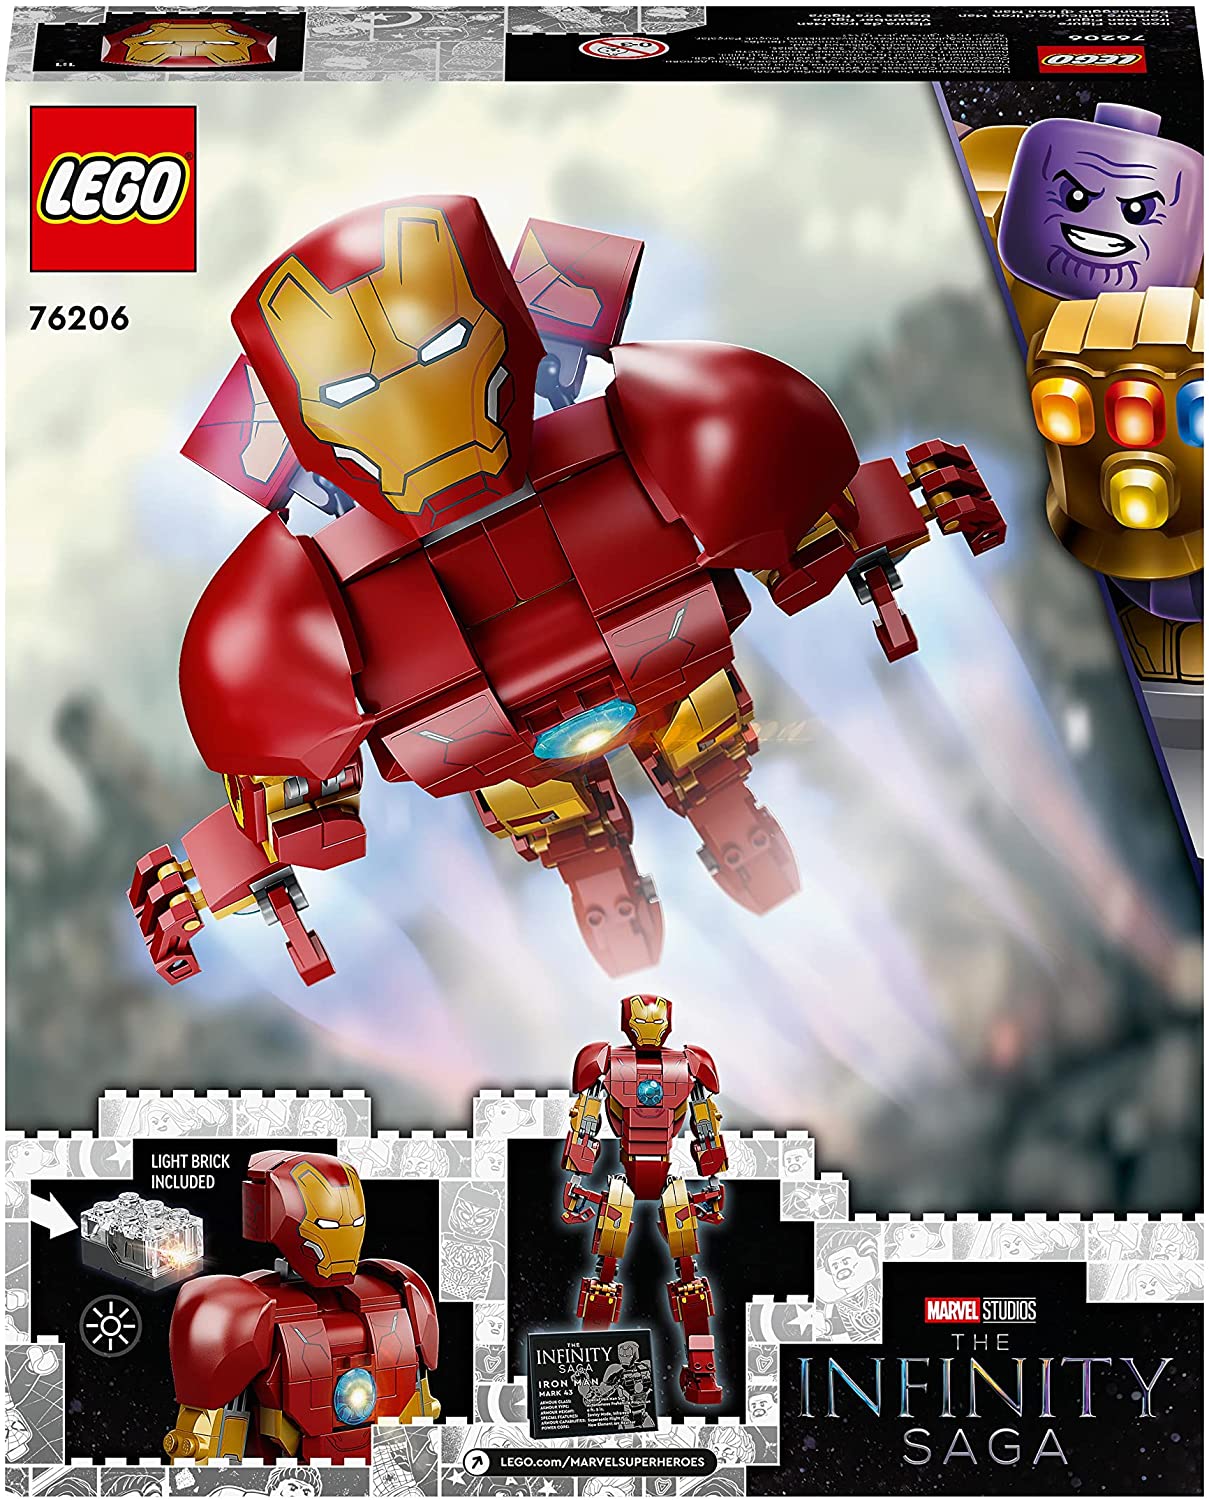 Personaggio di Iron Man